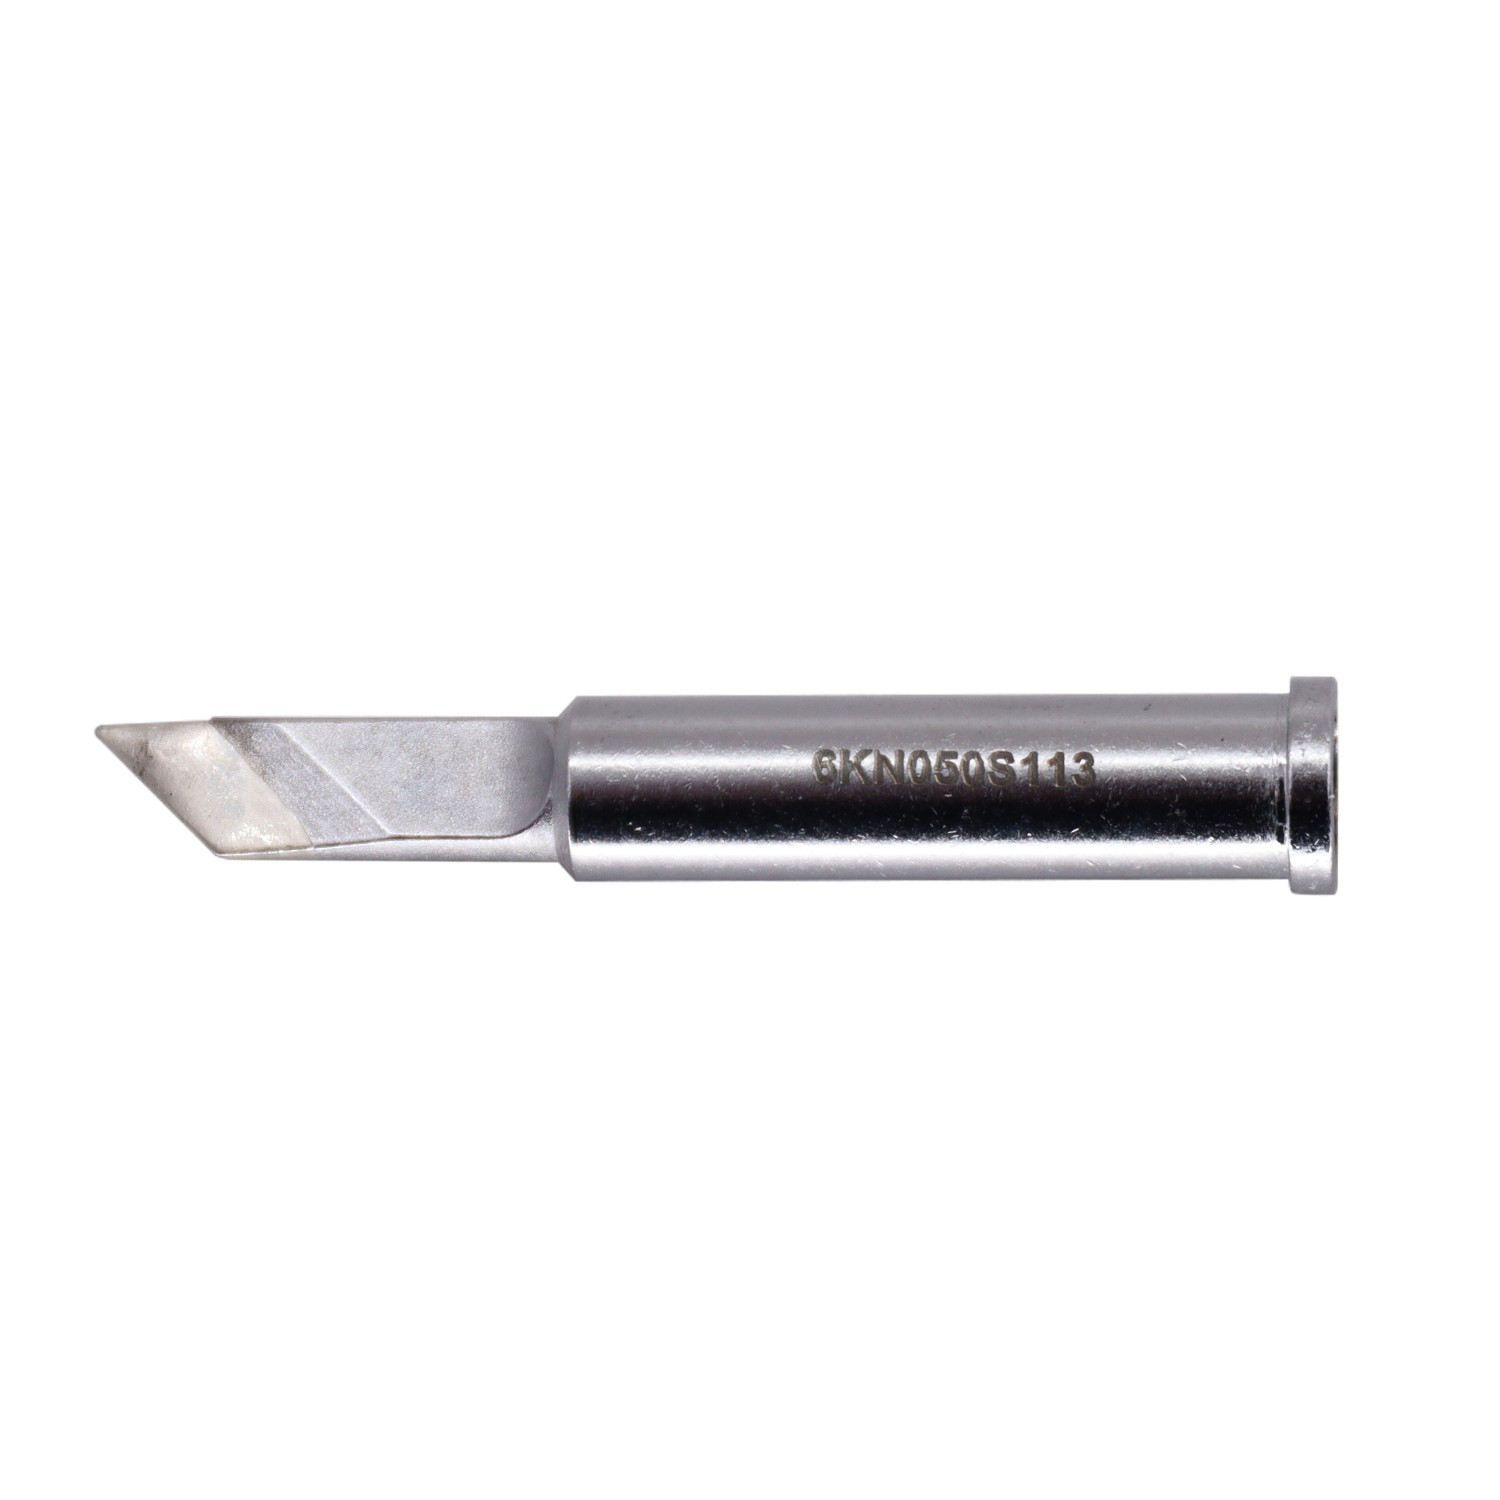 【GT6-KN0050S】KNIFE TIP (GT6), 4.0 MM X 16.0 M